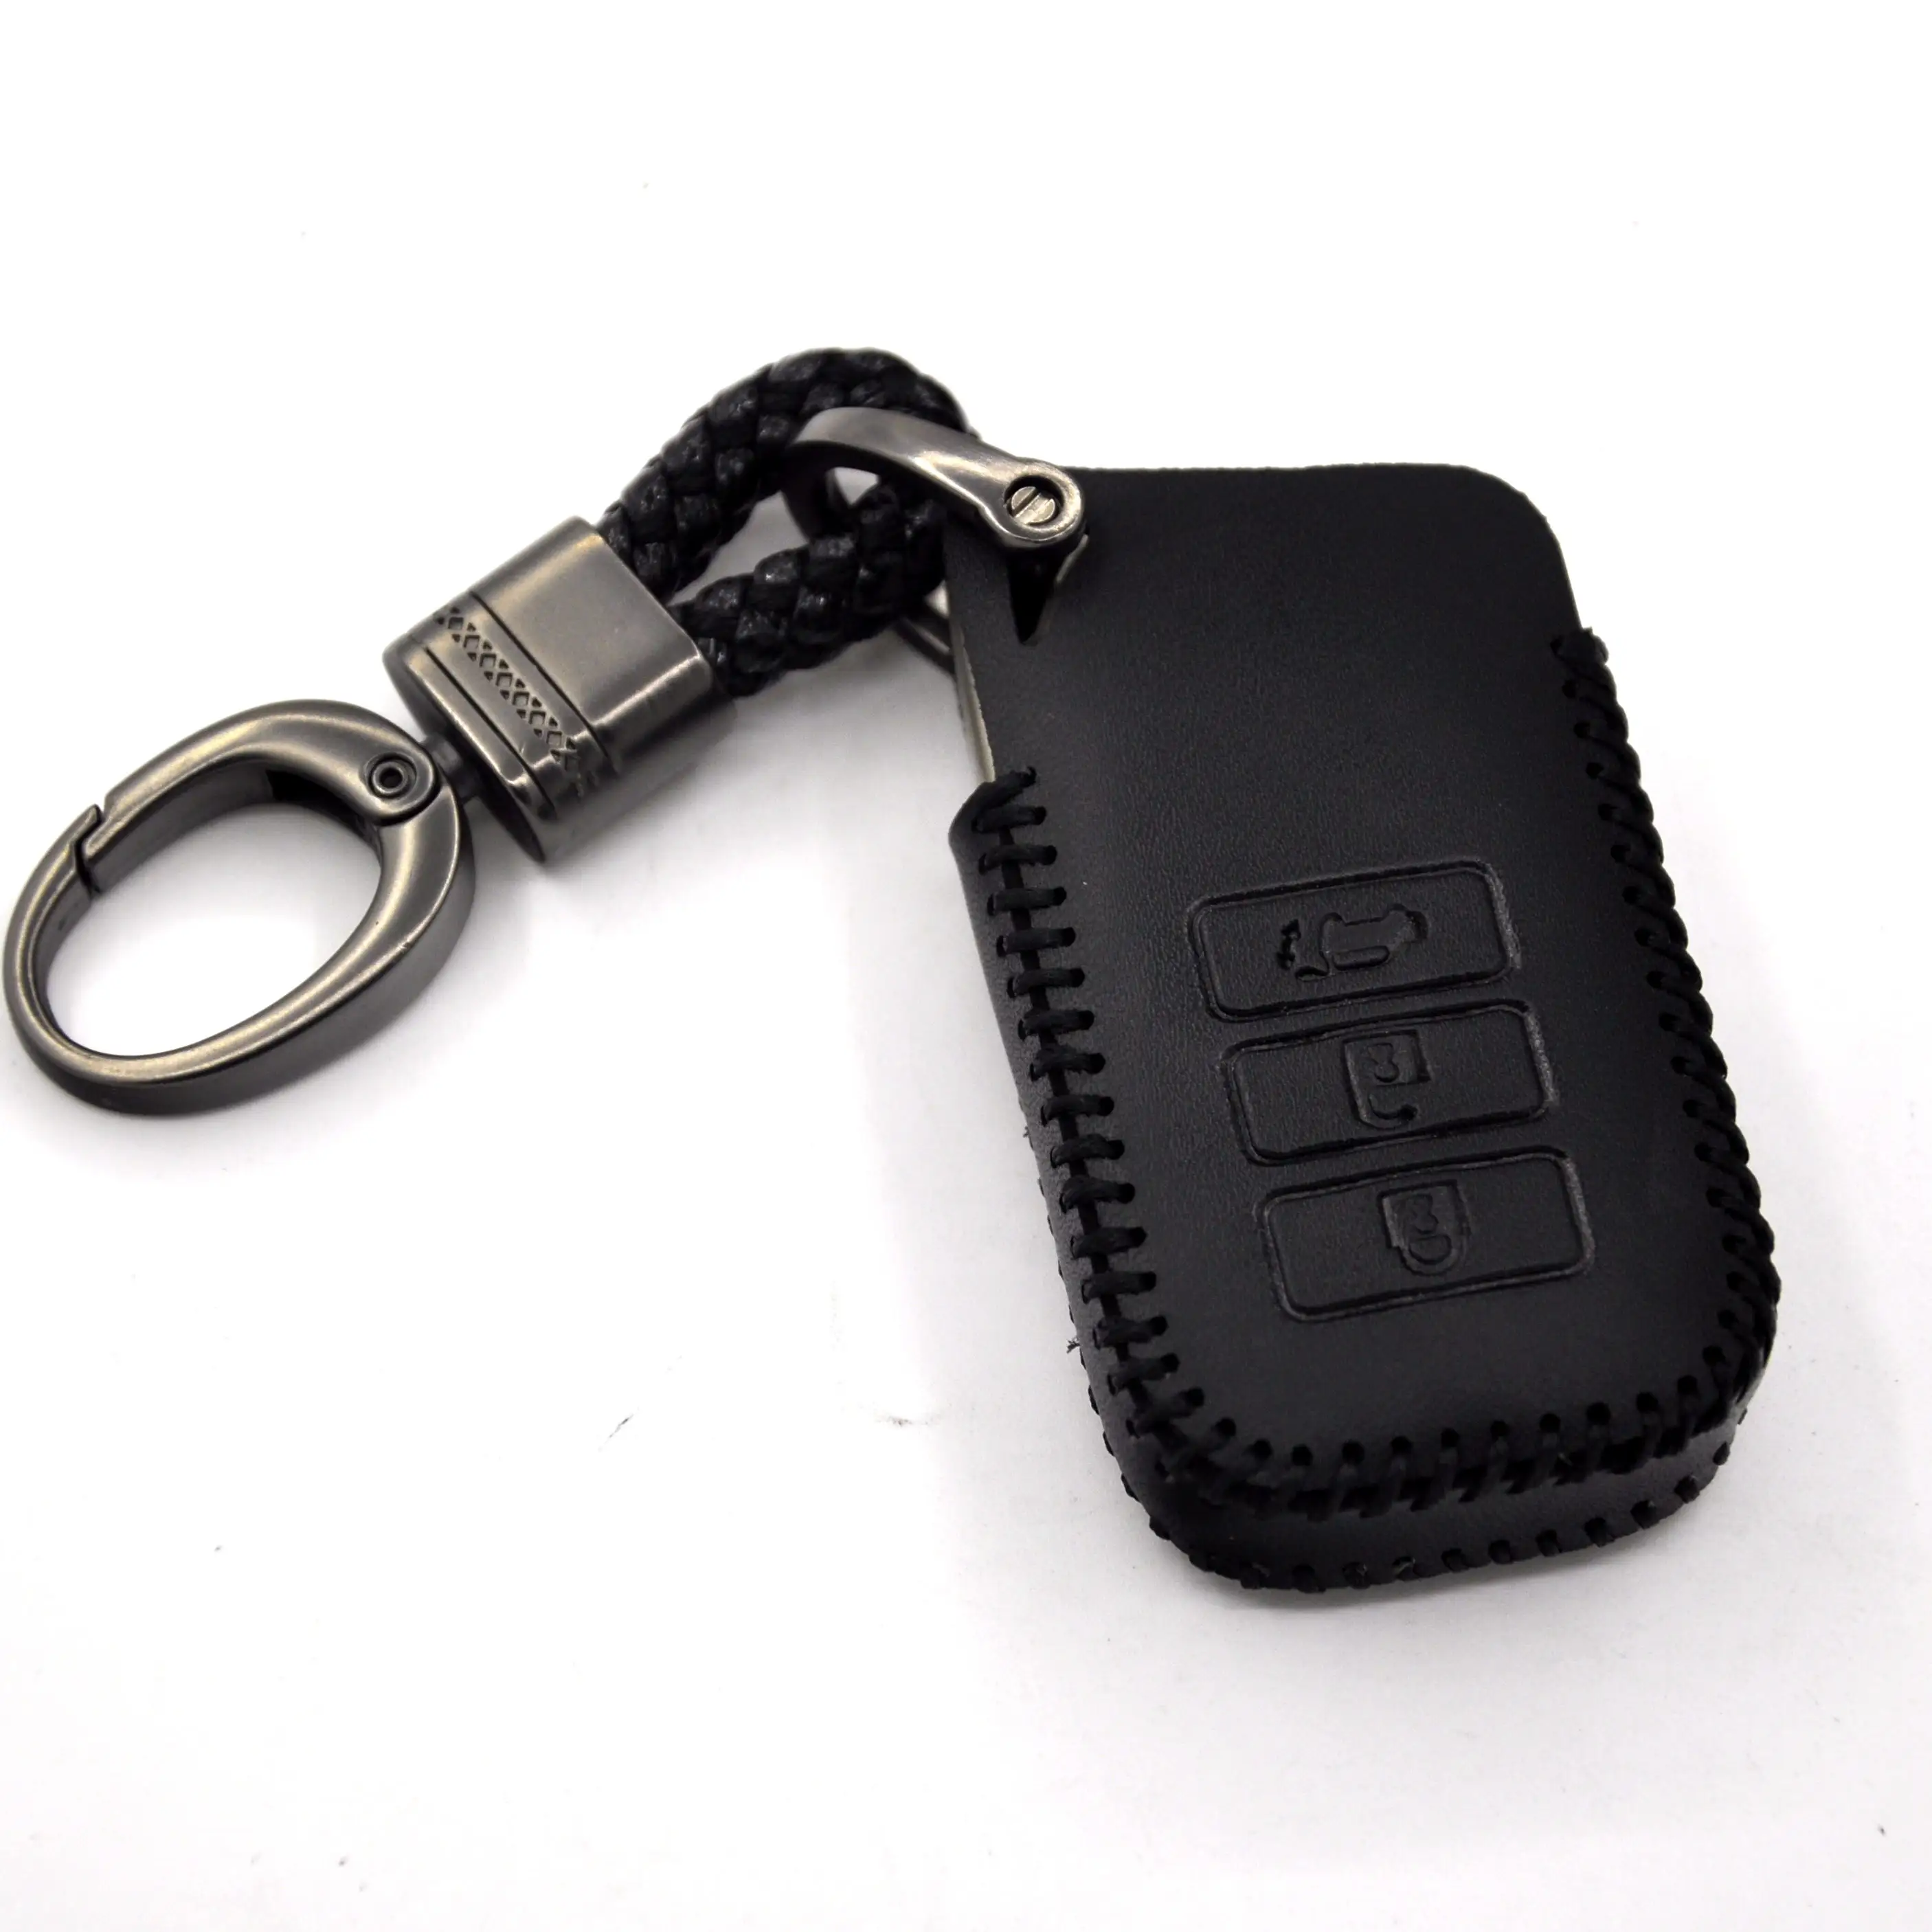 Vera Pelle Remote Control Car Keychain Caso Della Copertura Chiave Per Lexus RX270 NX200 2 3 4 Pulsante